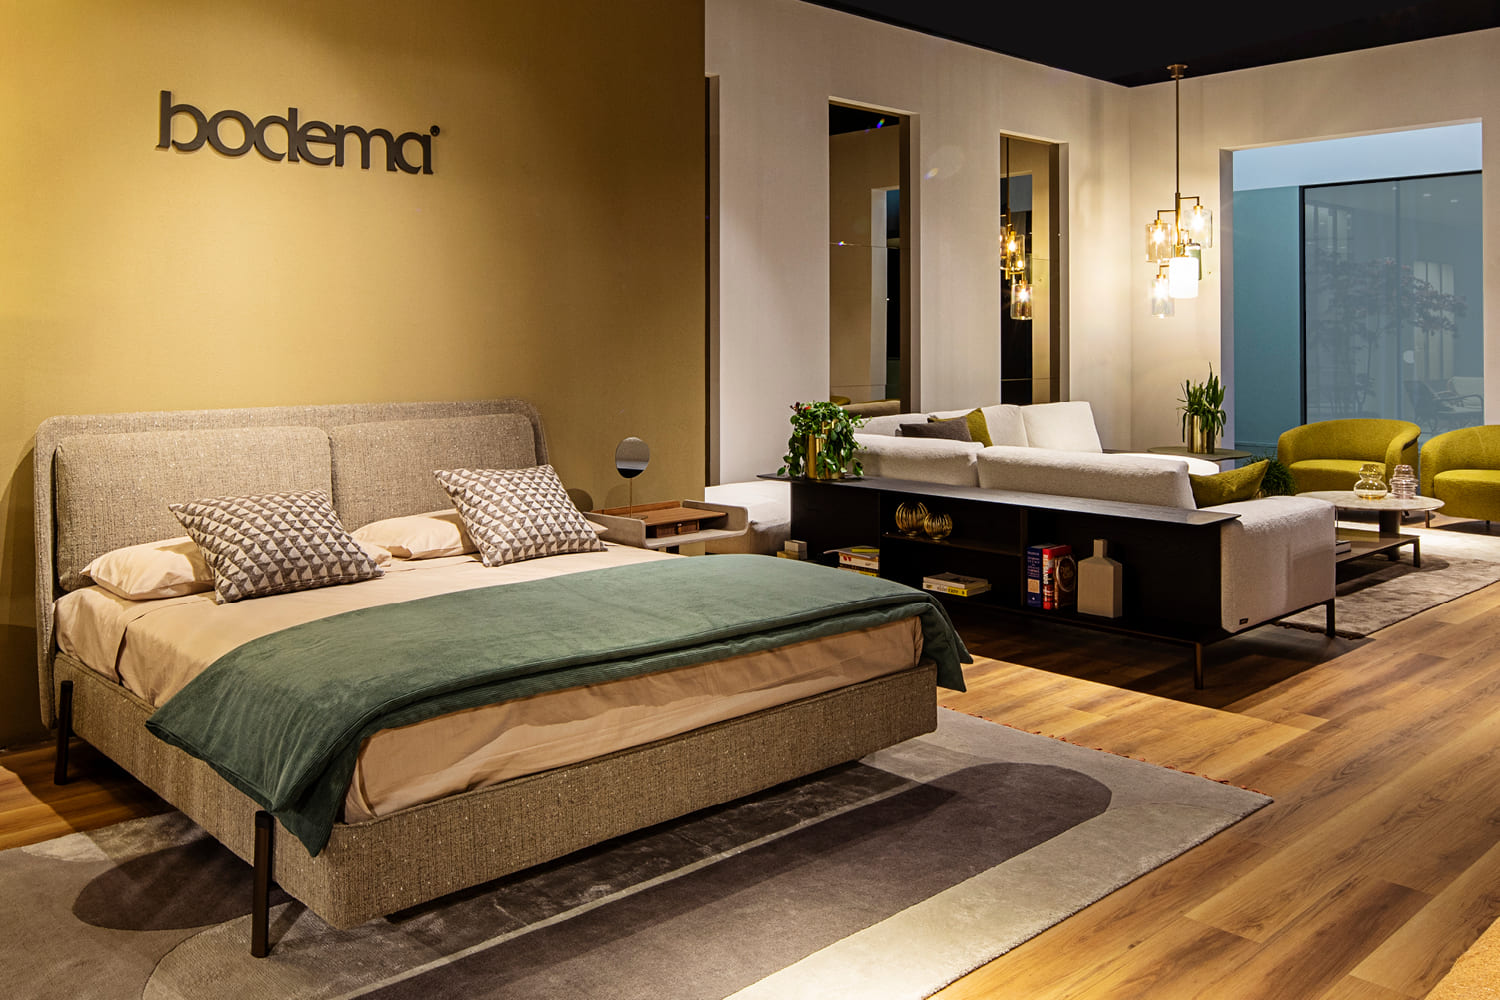 Schlaf- und Wohnbereich mit Möbeln aus der Bodema-Kollektion